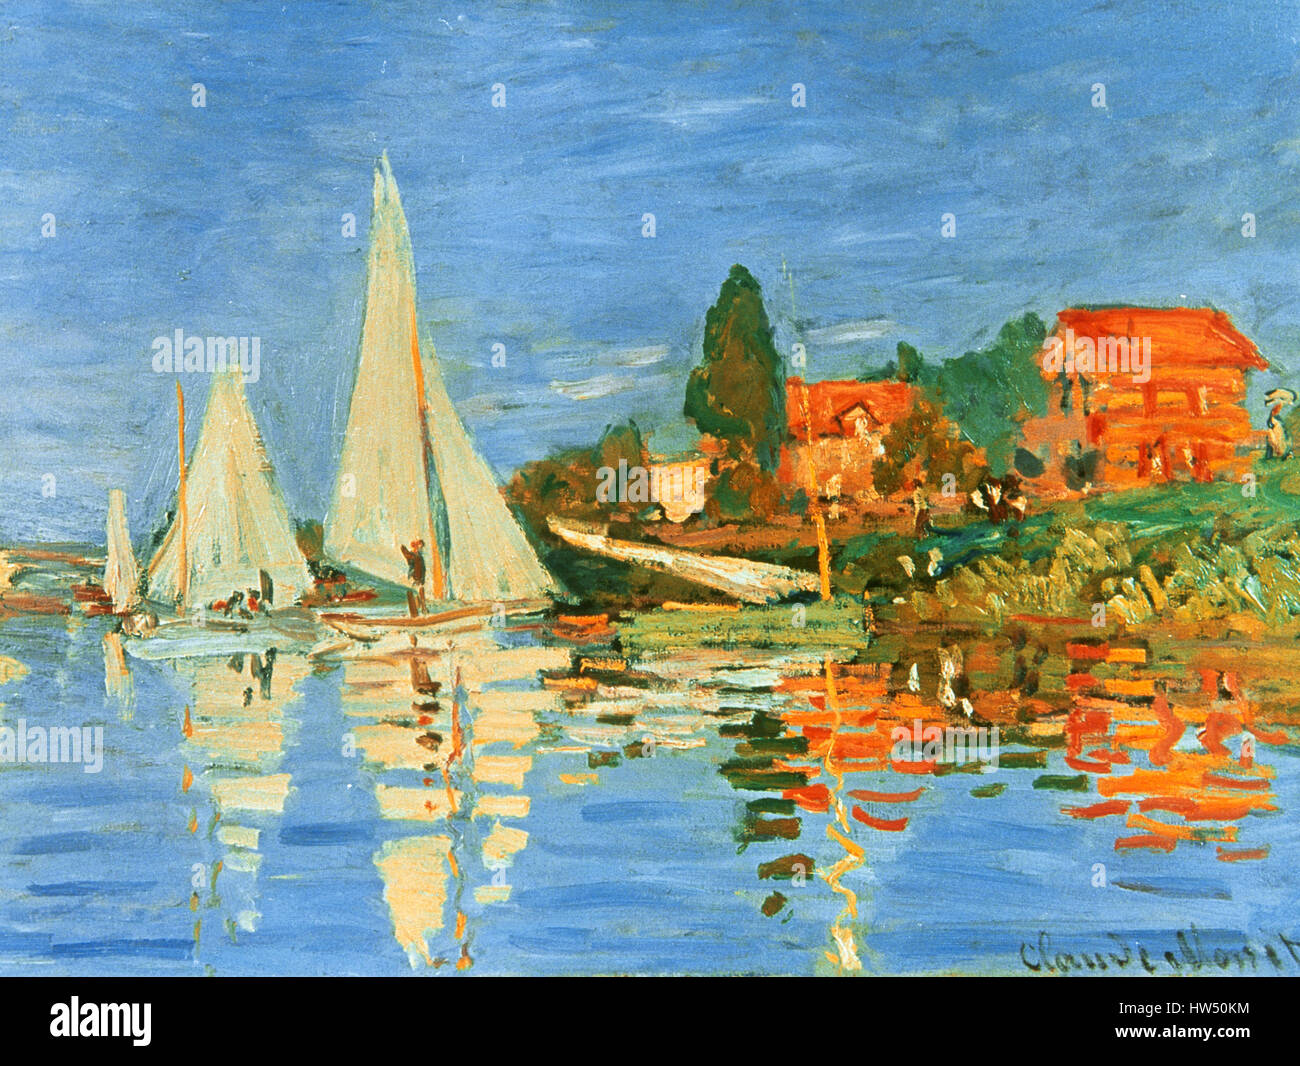 Claude Monet (1906-1957). Le peintre français. Mouvement impressionniste. Régates à Argenteuil. 1872. Musée d'Orsay. Paris, France. Banque D'Images